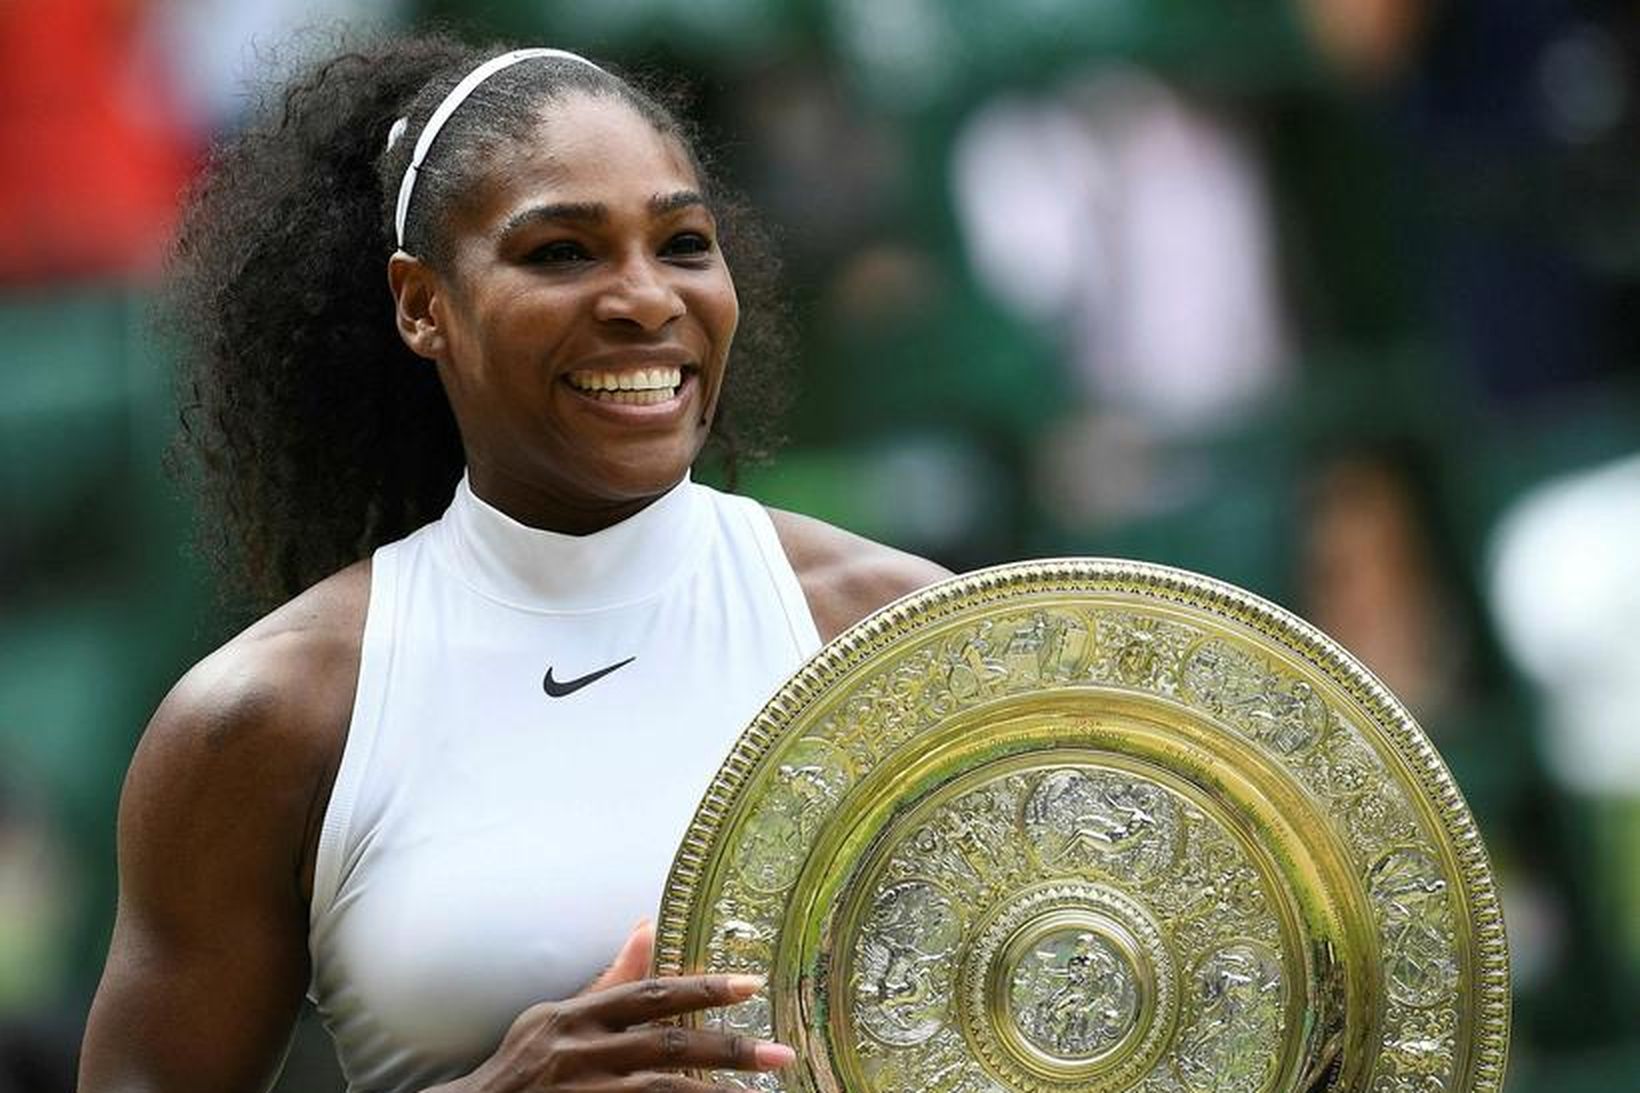 Tenniskonan Serena Williams á von á sínu fyrsta barni.